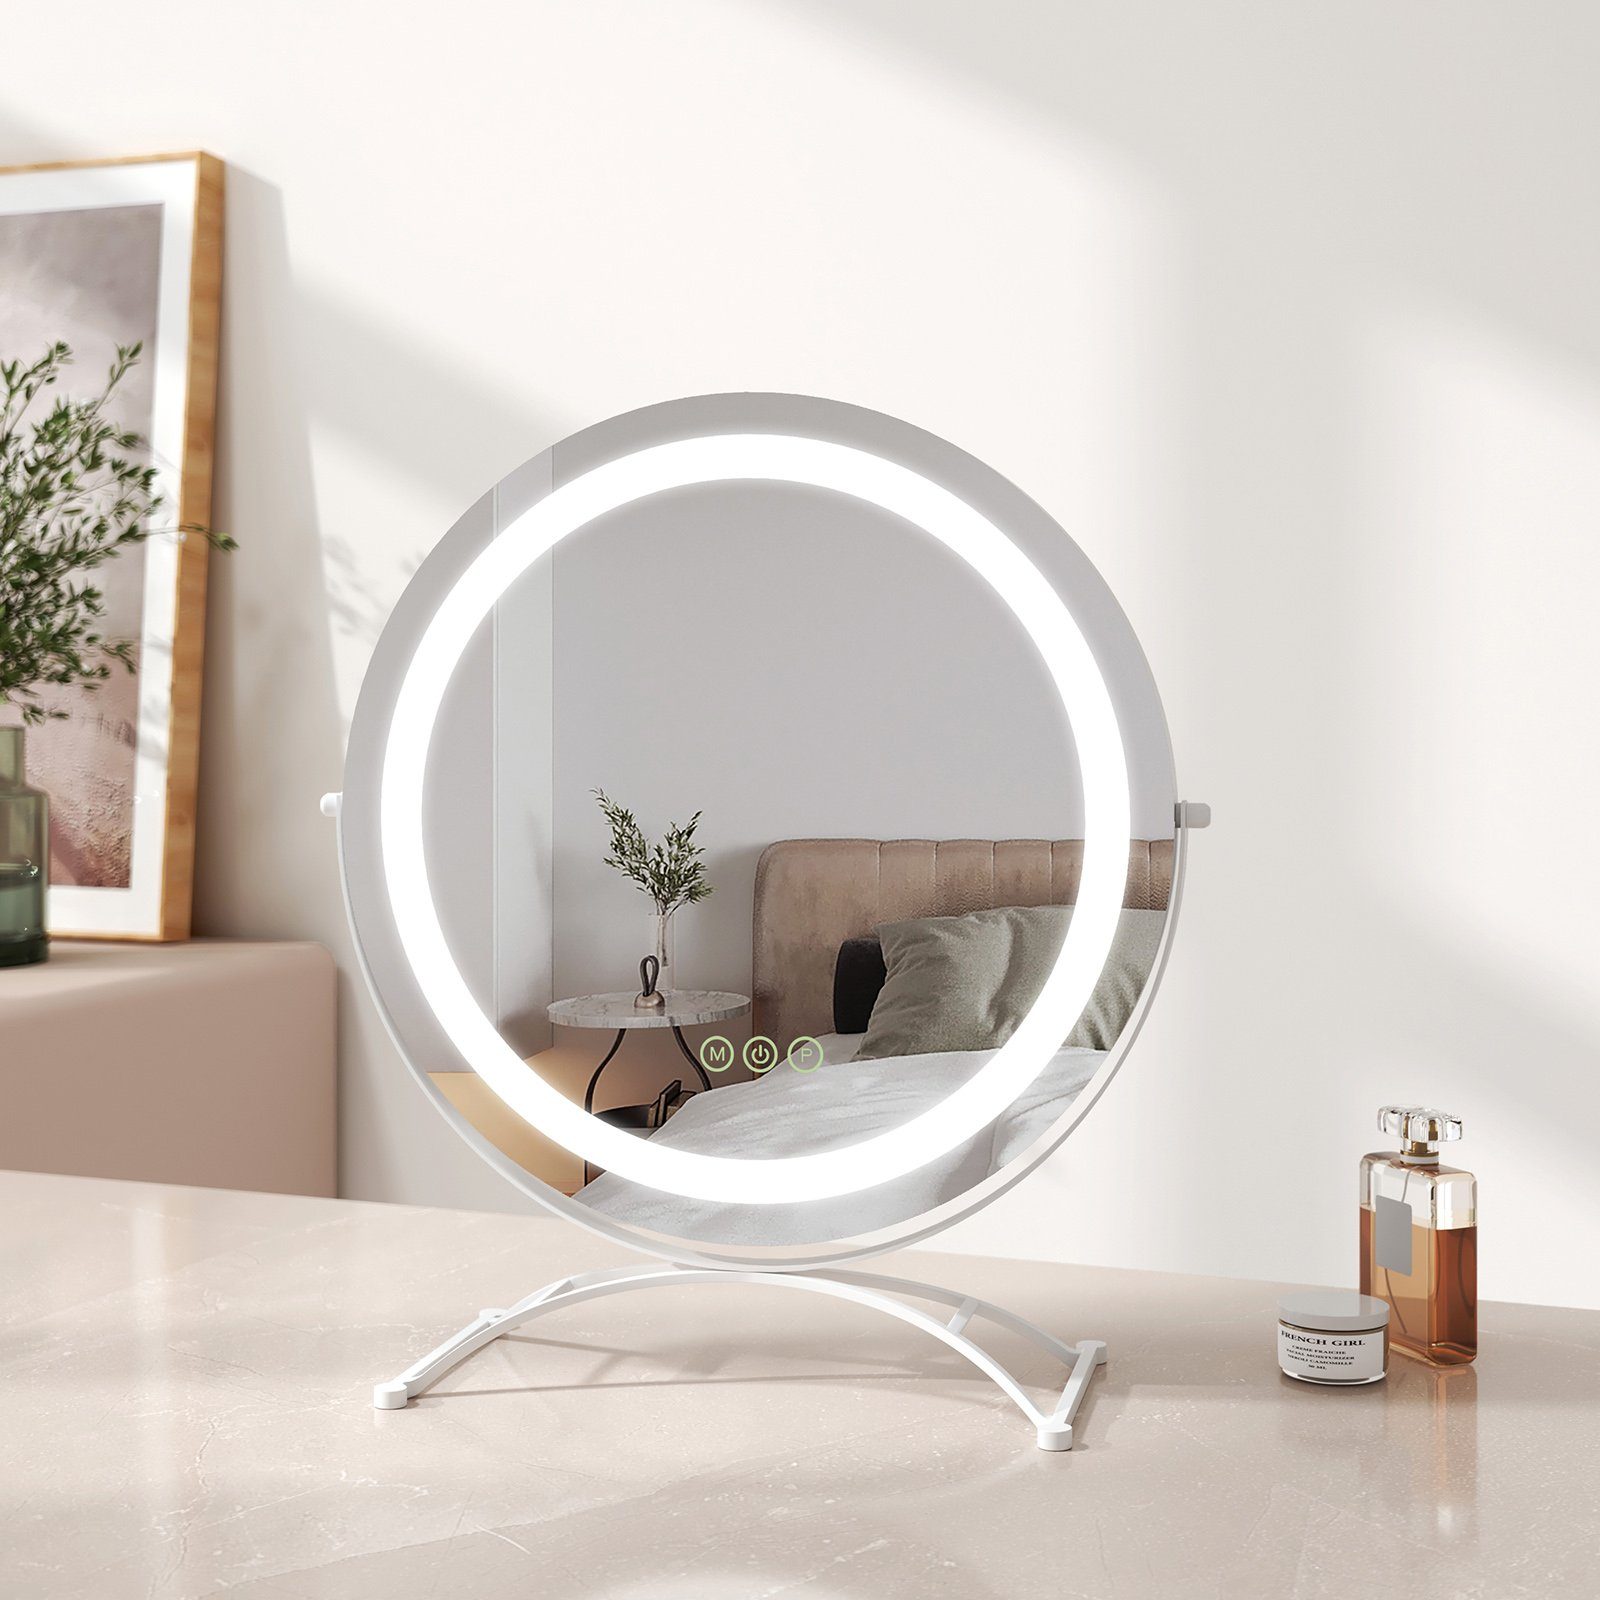 EMKE Kosmetikspiegel Schminkspiegel Runder Kosmetikspiegel mit Beleuchtung LED Tischspiegel, mit Touch, 3 Lichtfarben Dimmbar, Memory-Funktion, 360° Drehbar Weiß